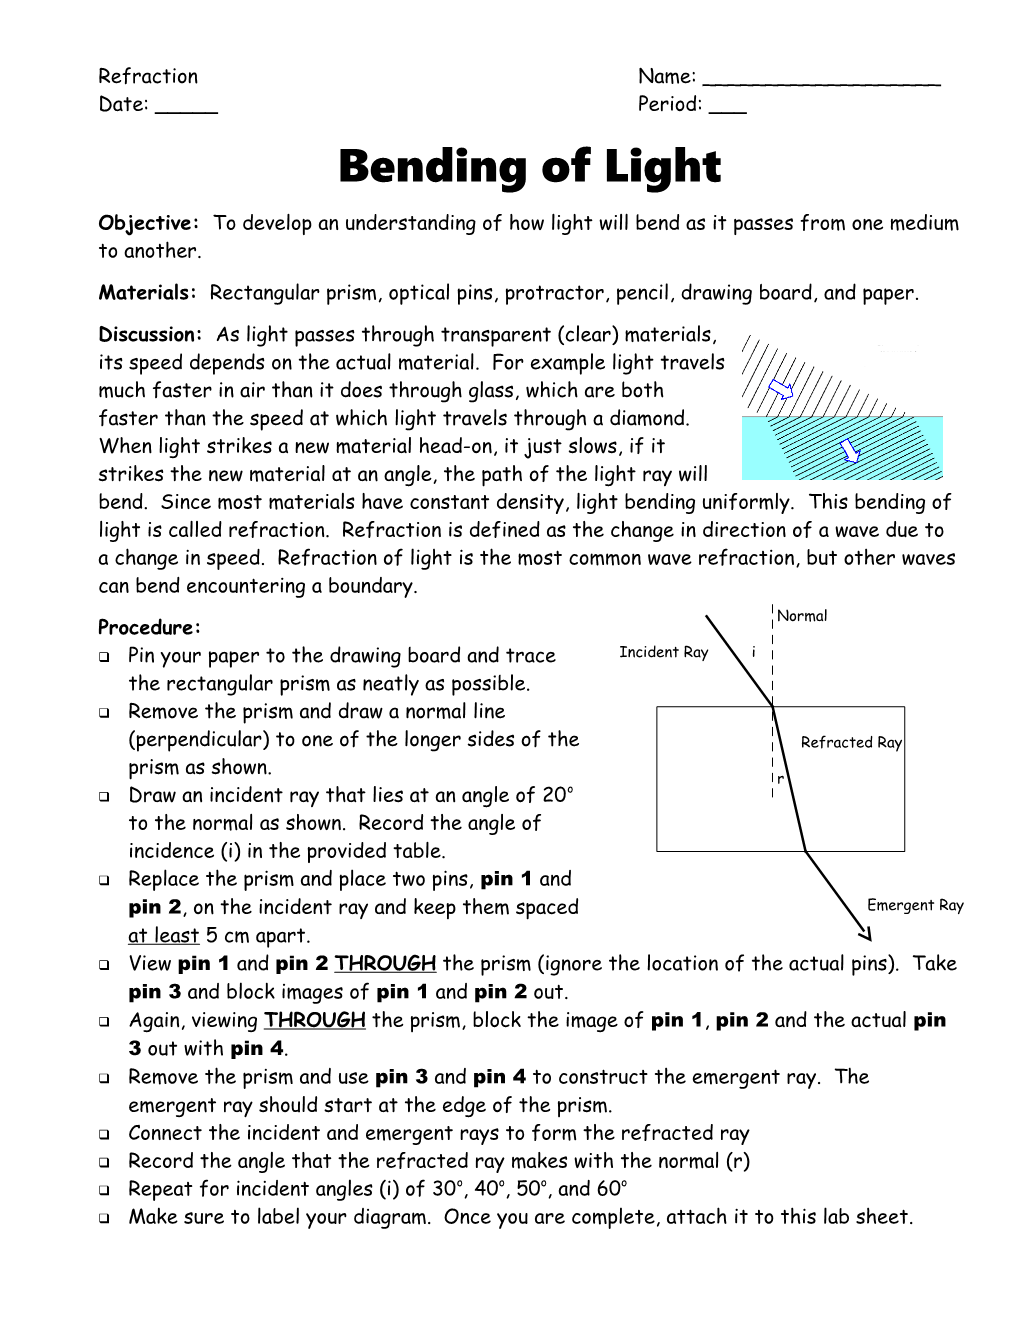 Bending of Light